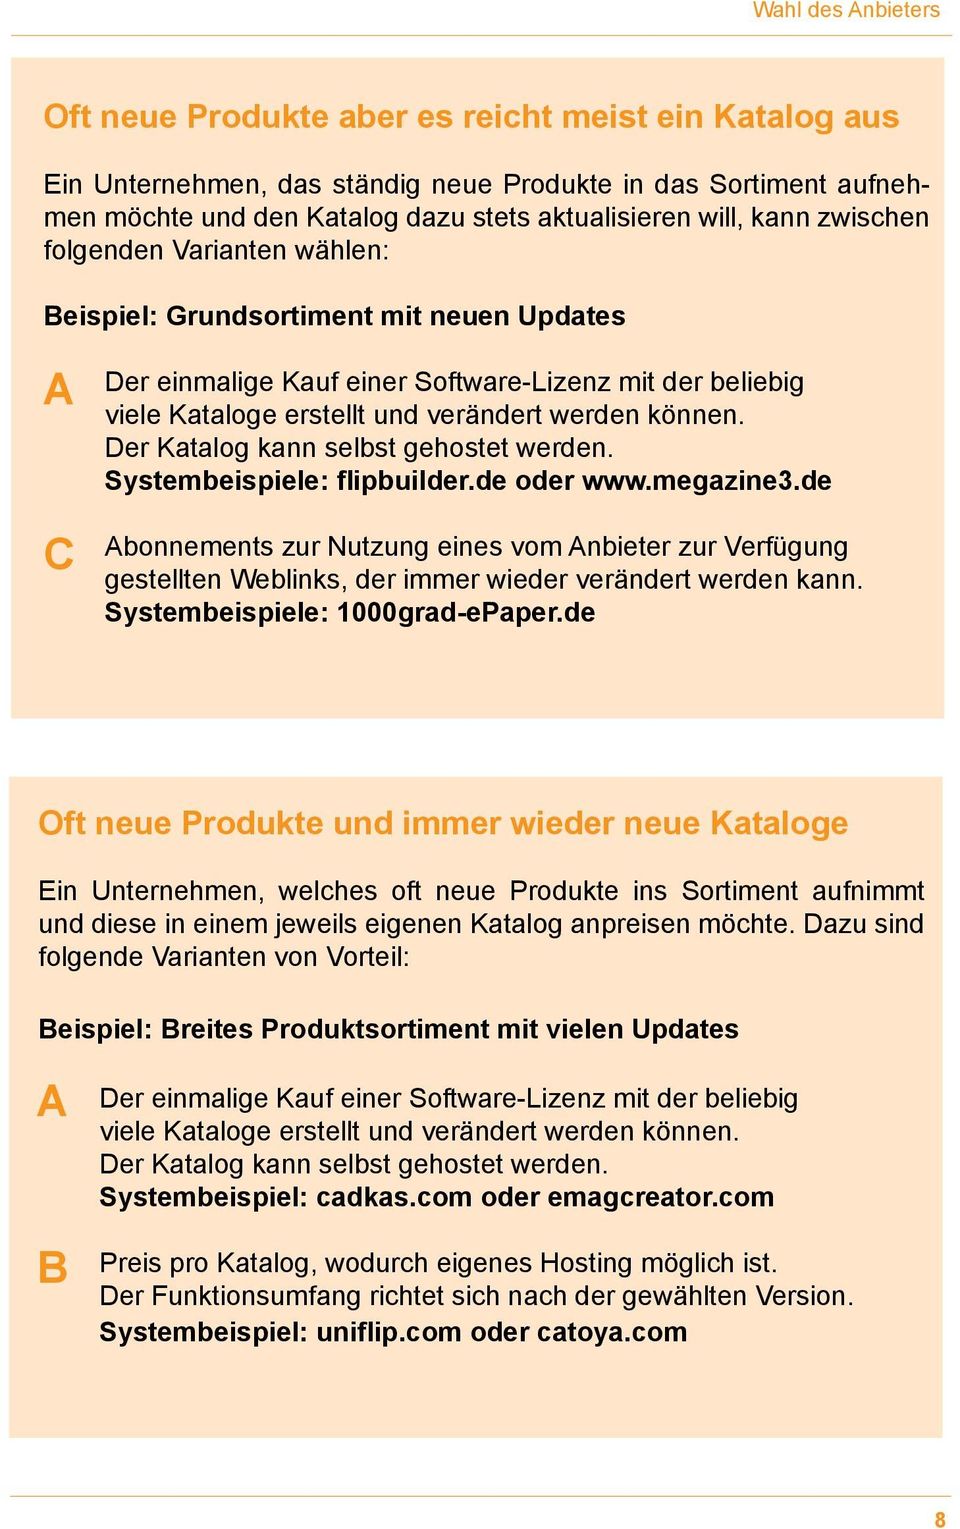 Der Katalog kann selbst gehostet werden. Systembeispiele: flipbuilder.de oder www.megazine3.